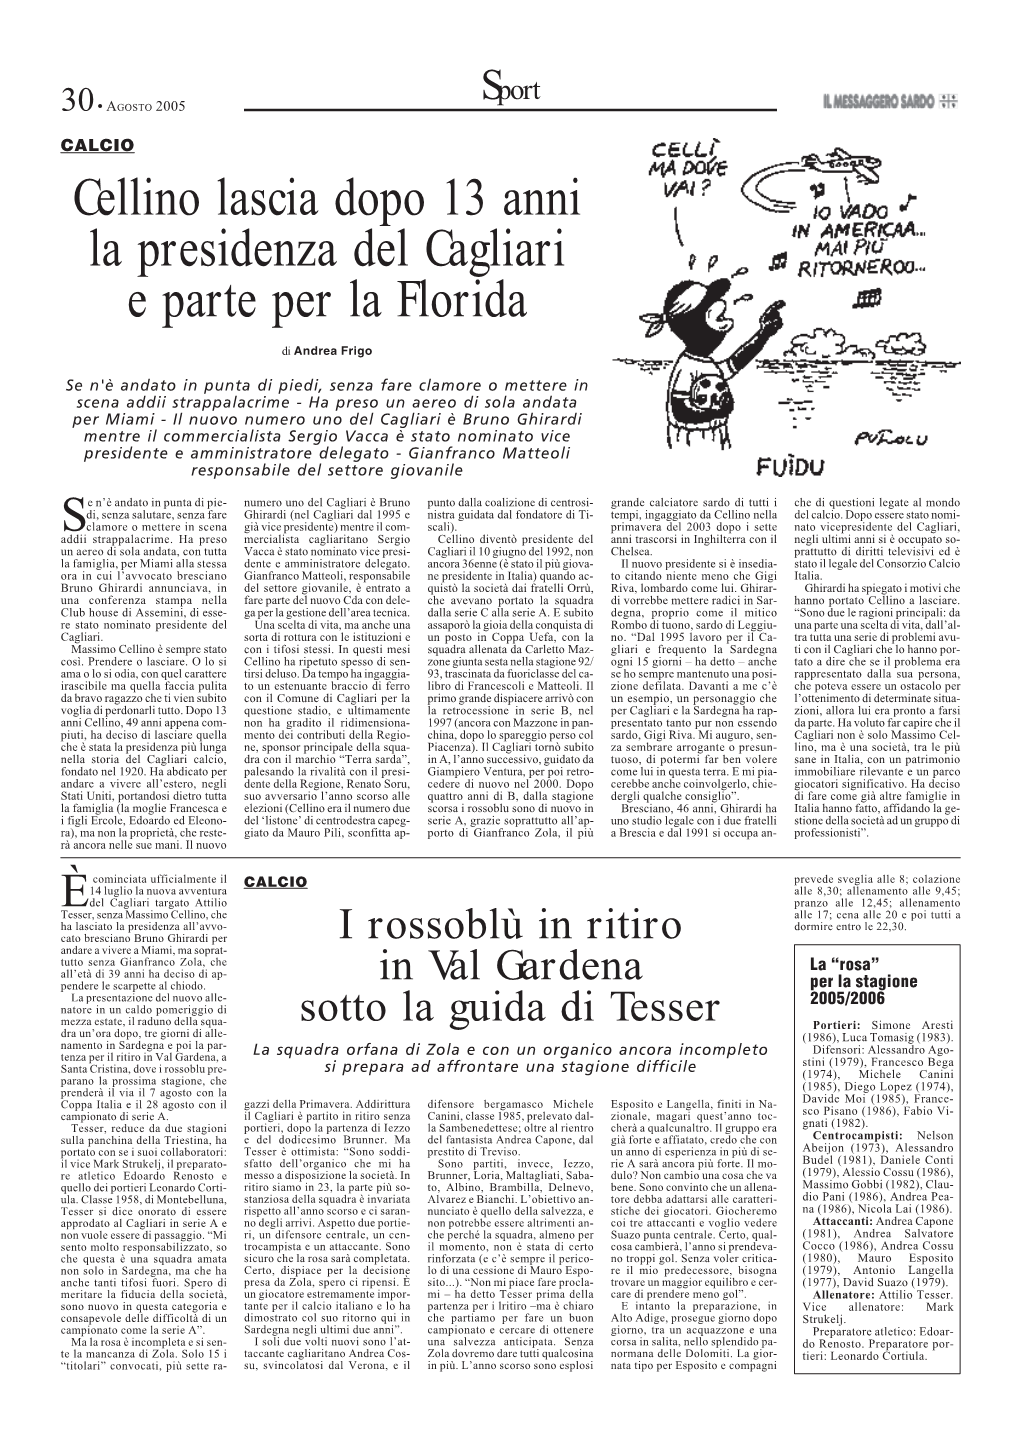 Cellino Lascia Dopo 13 Anni La Presidenza Del Cagliari E Parte Per La Florida